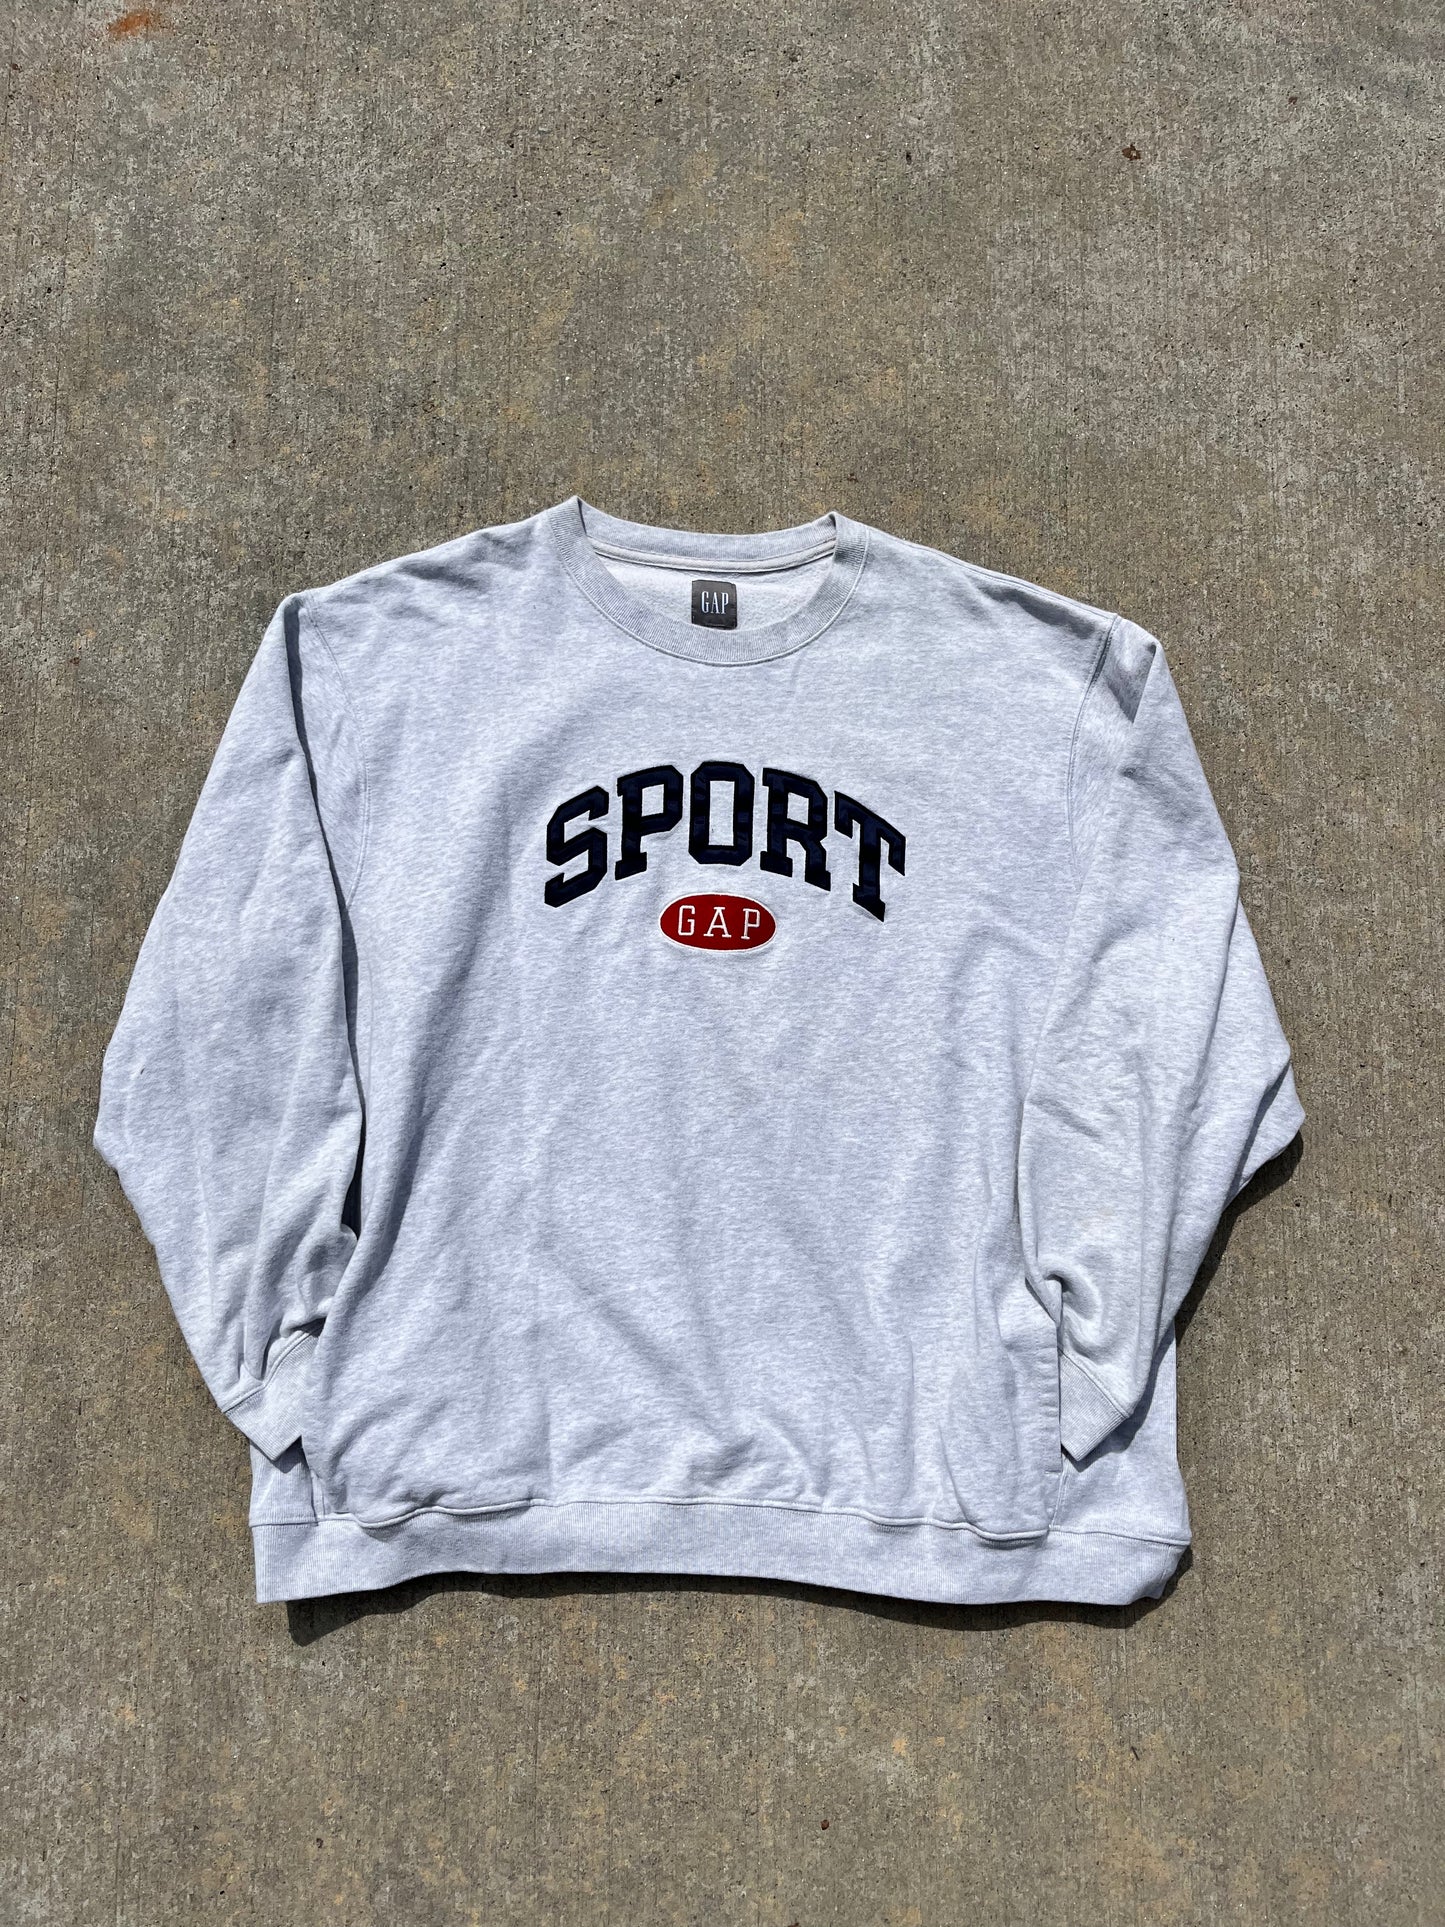 Gap Sport pullover